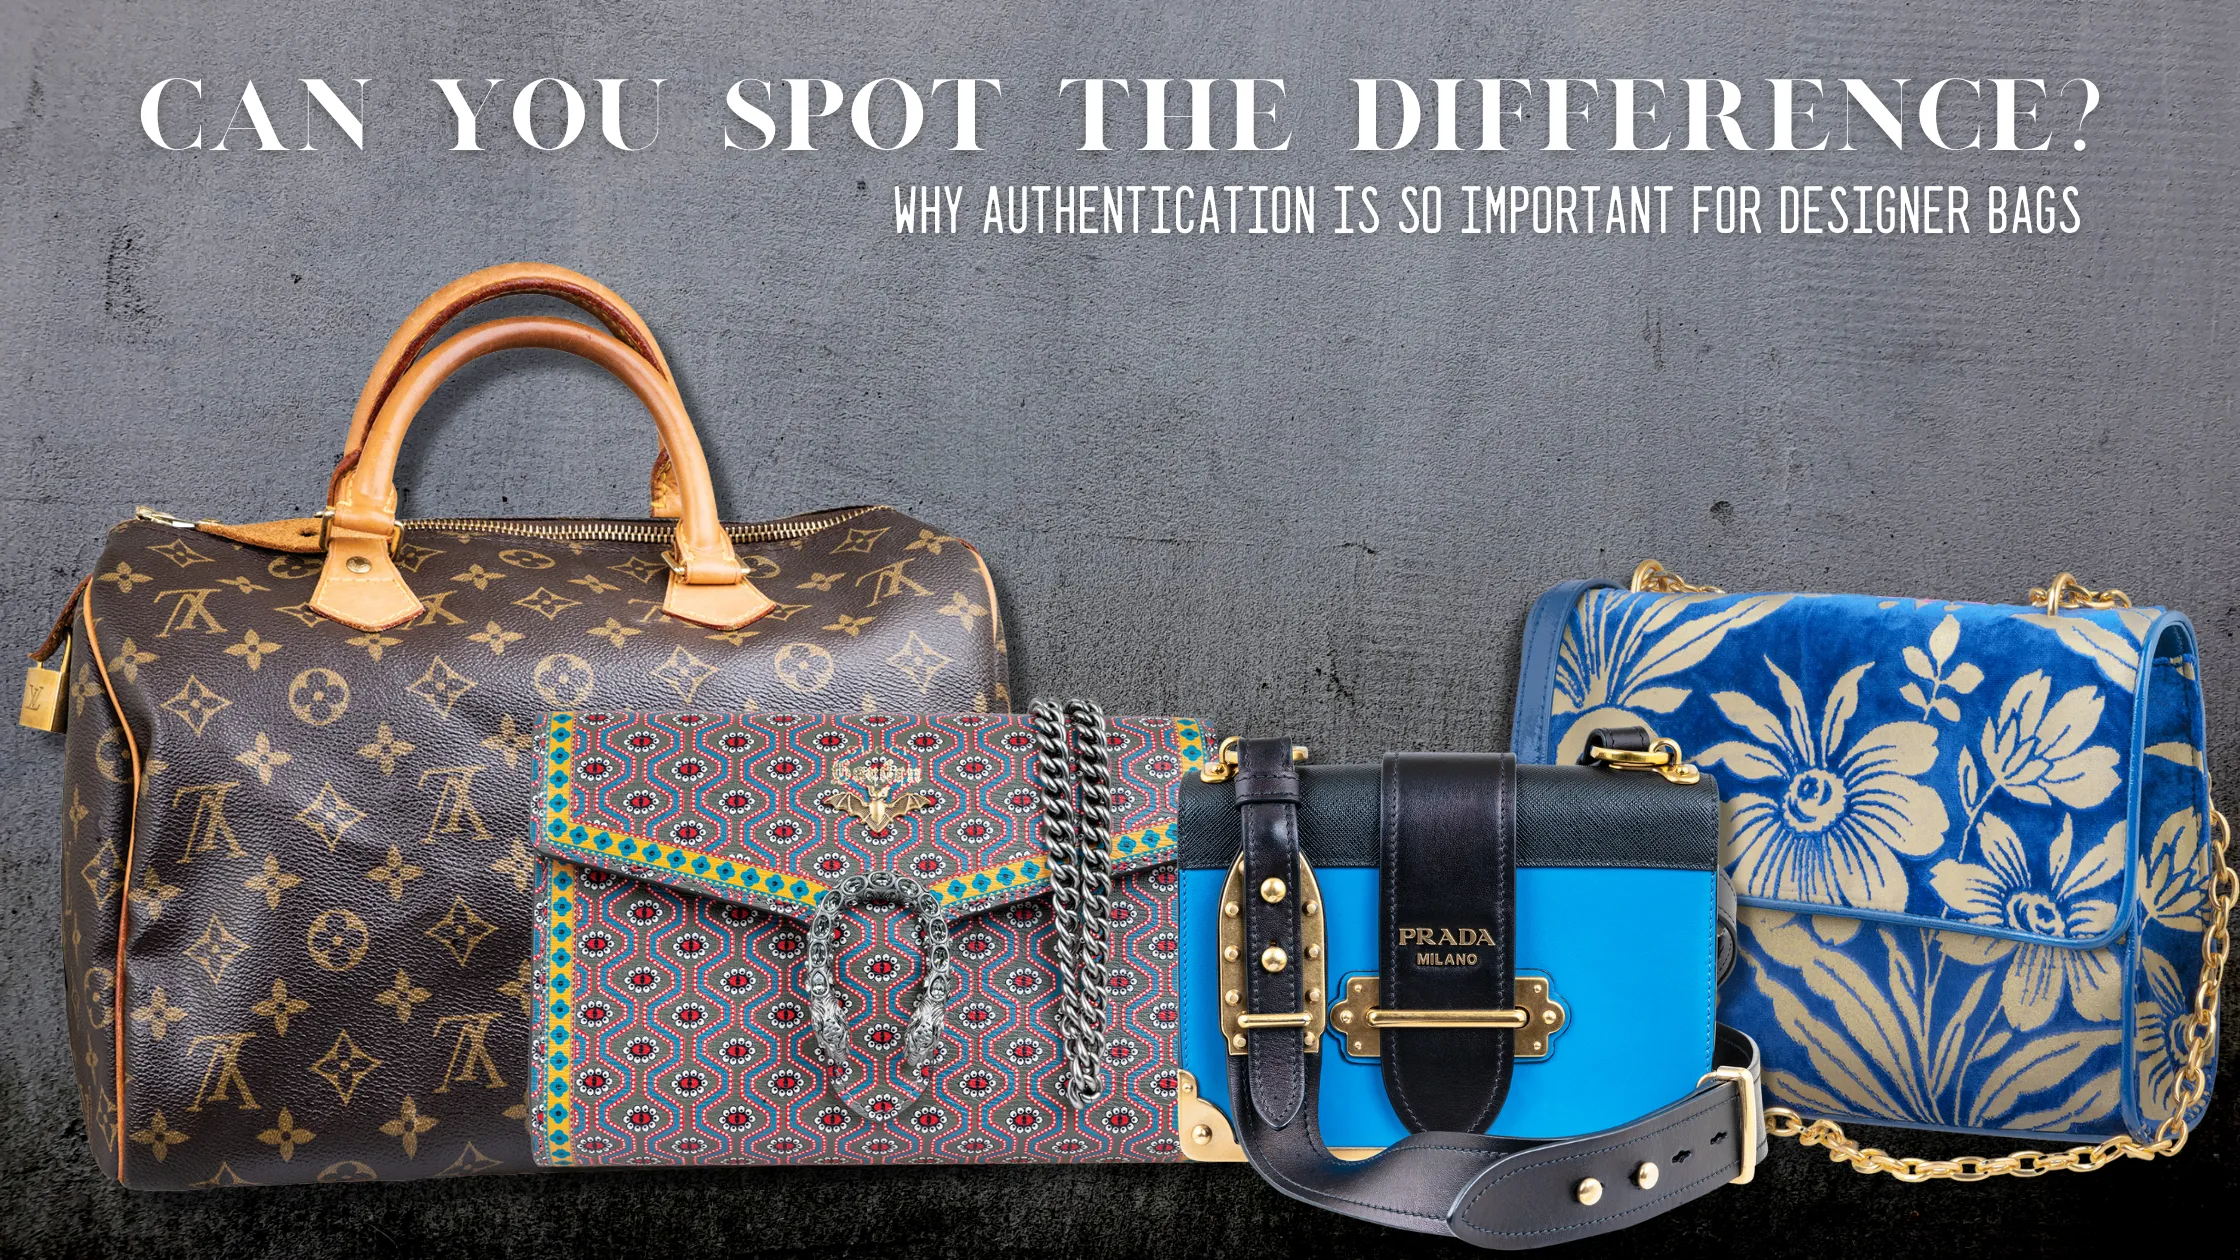 Louis Vuitton Authenticated Favorite Handbag